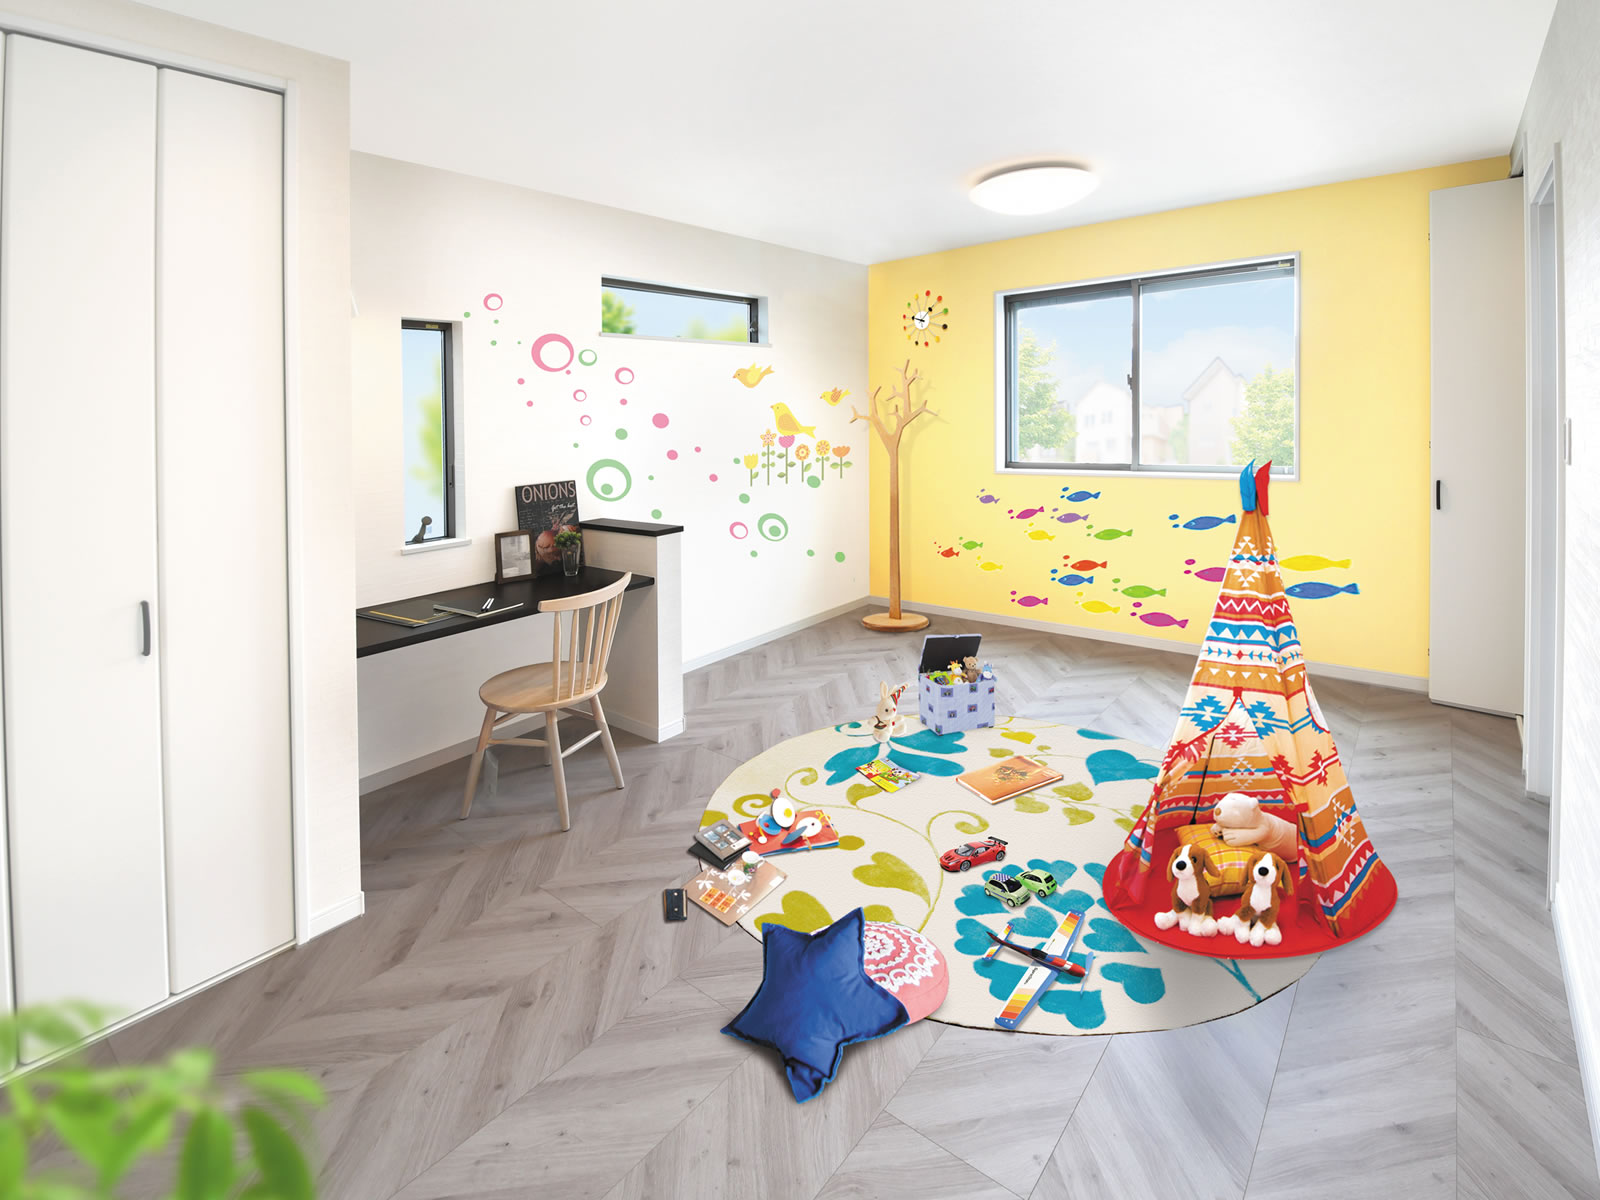 合わせて10.1帖の子供部屋は、小さい頃は兄弟いっしょに遊べて将来は2室にできる、子供の成長を考えた育み設計です。